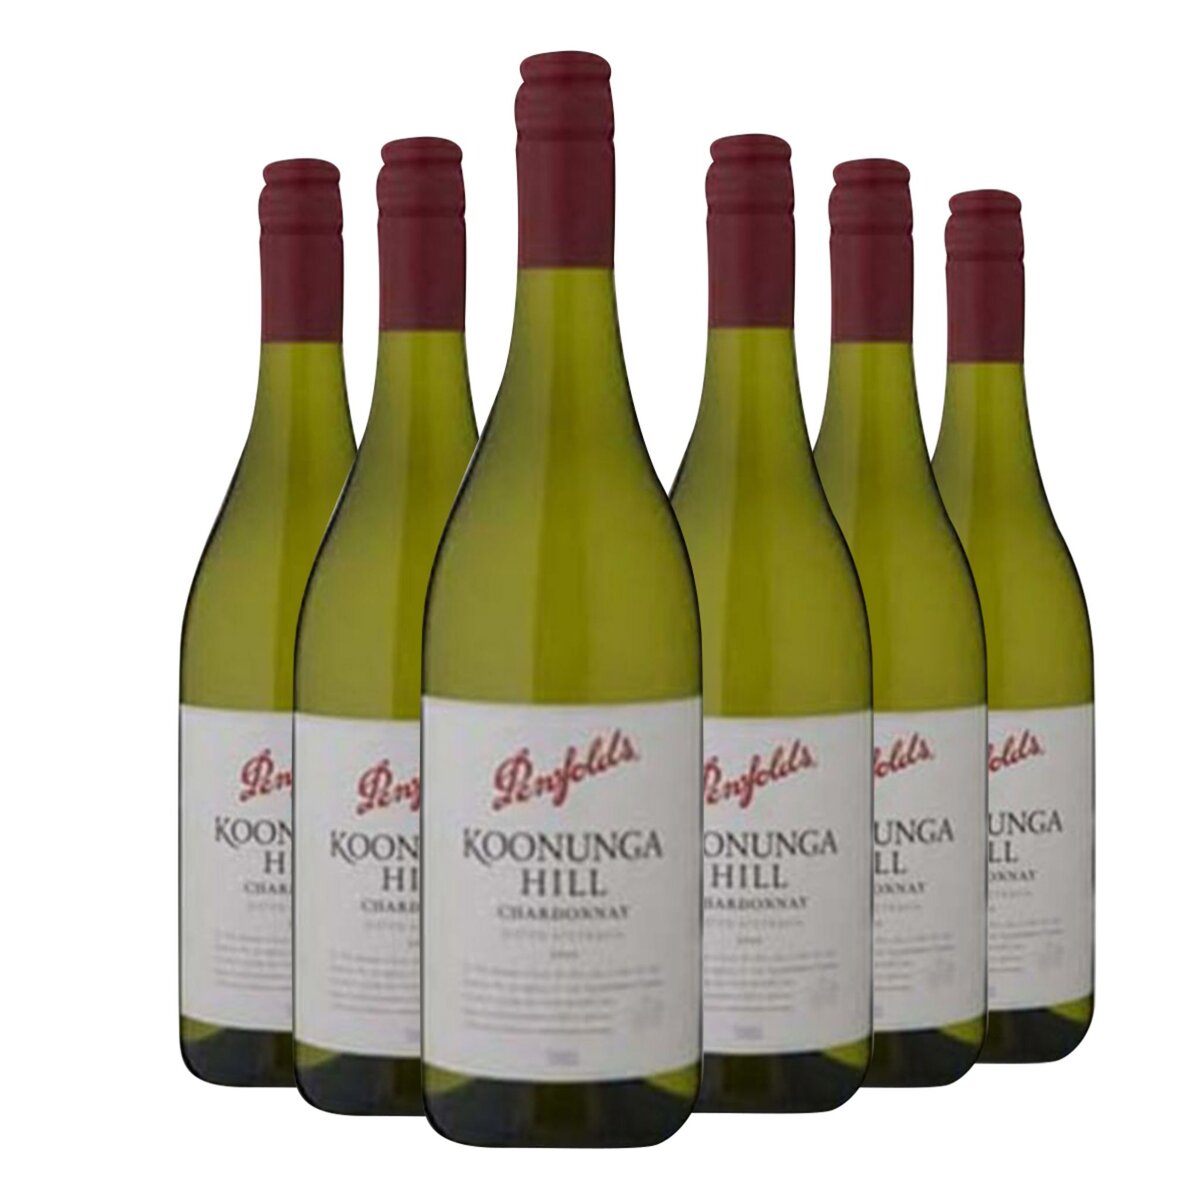 Lot de 6 bouteilles Penfolds Koonunga Hill | Chardonnay Screw Cap Australie Blanc 2014